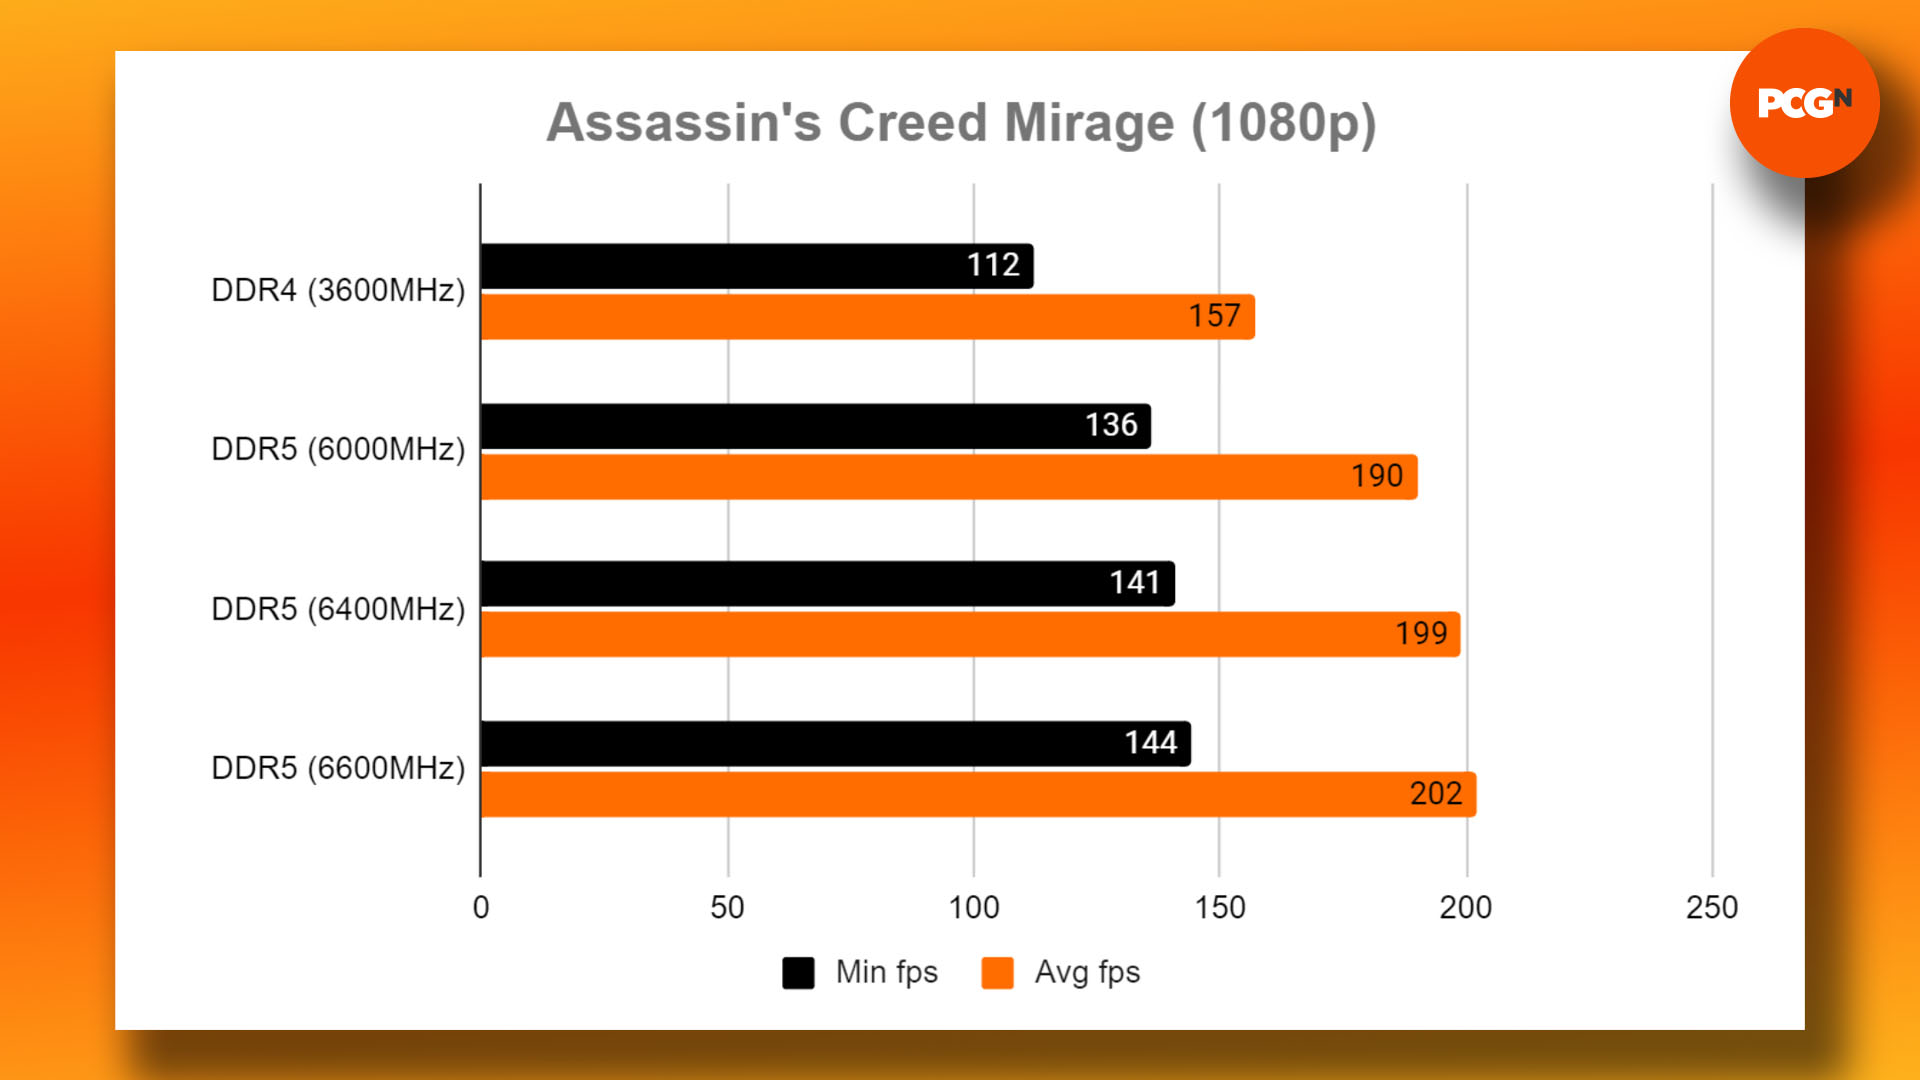 DDR4 vs DDR5 - oyun oynamak için hangi RAM satın alınmalı: Assassin's Creed Mirage 1080p kıyaslama sonuçları grafiği